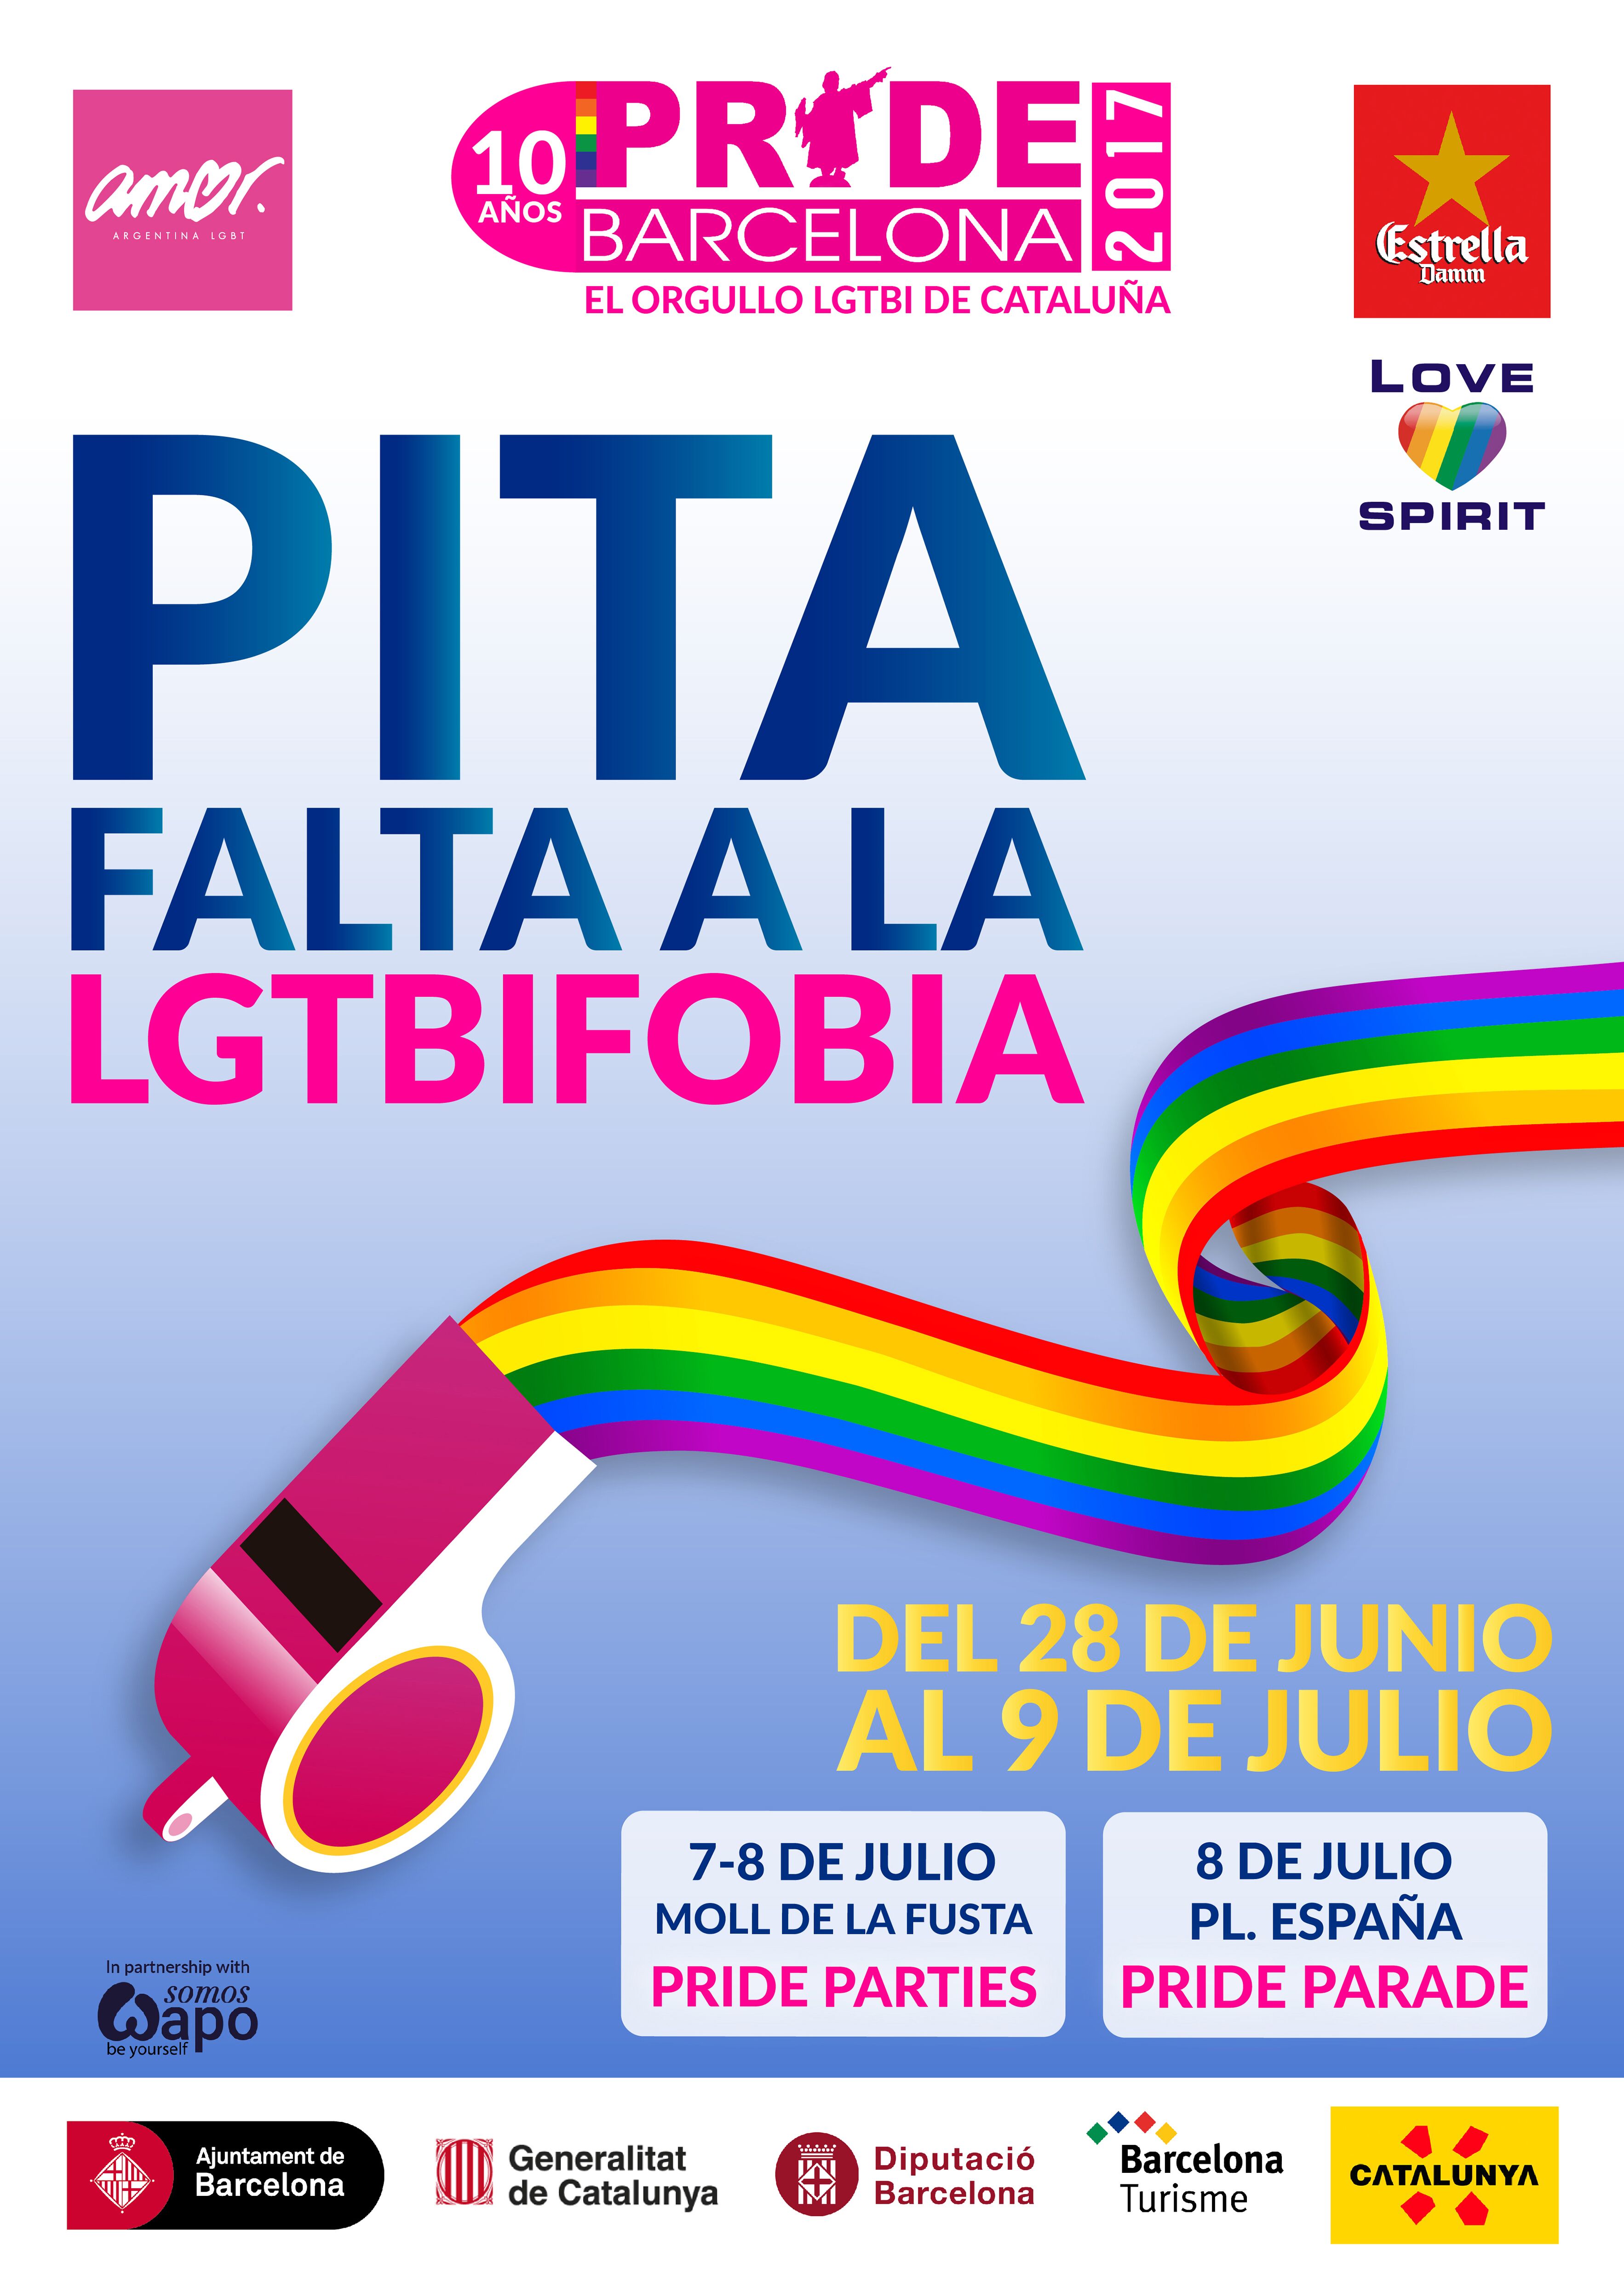 El Pride Barcelona celebra mañana su manifestación